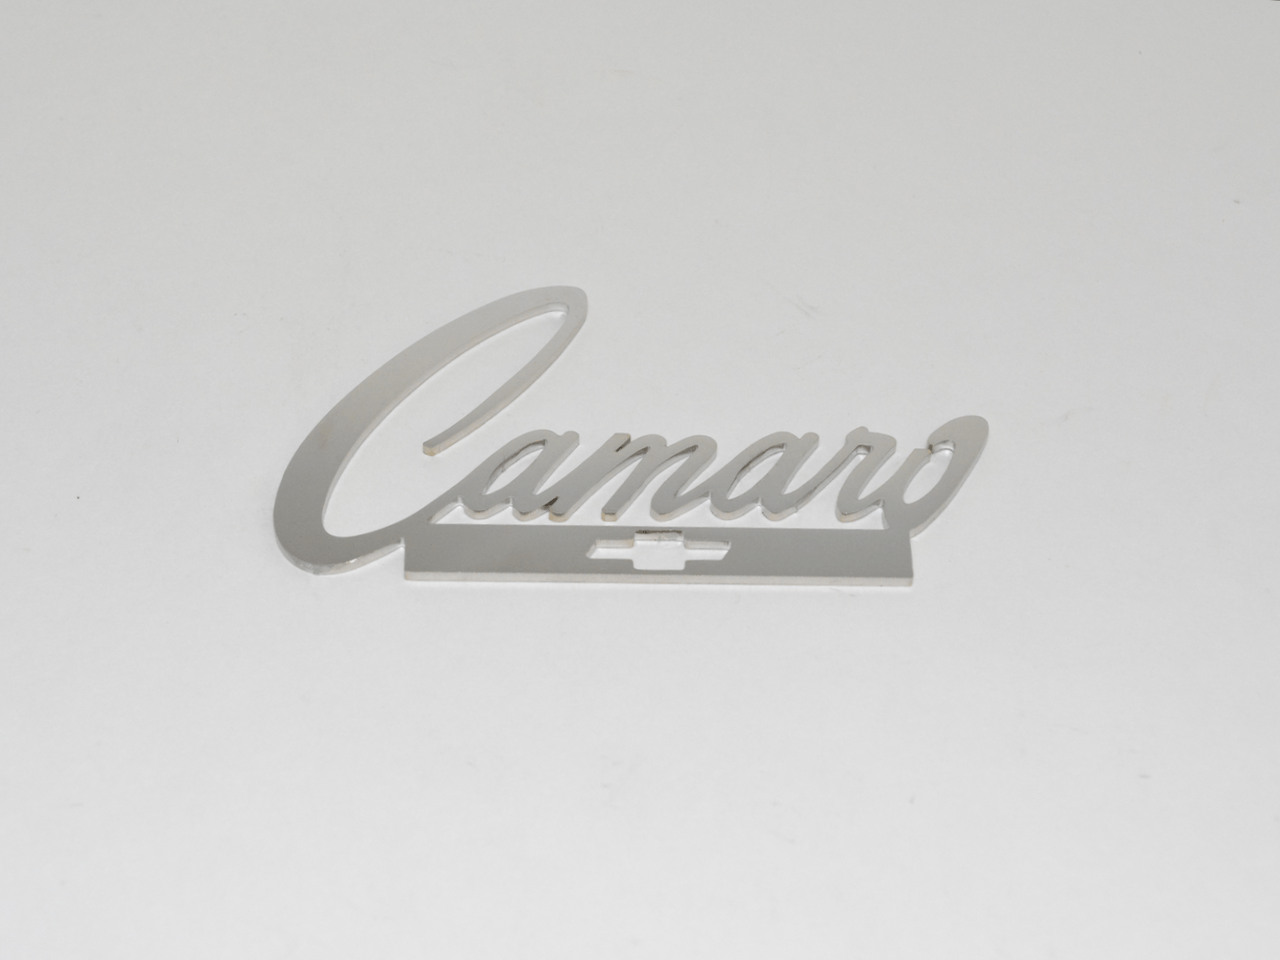 Script Camaro With Bowtie Emblem; - MorrisClassic.com, emblem